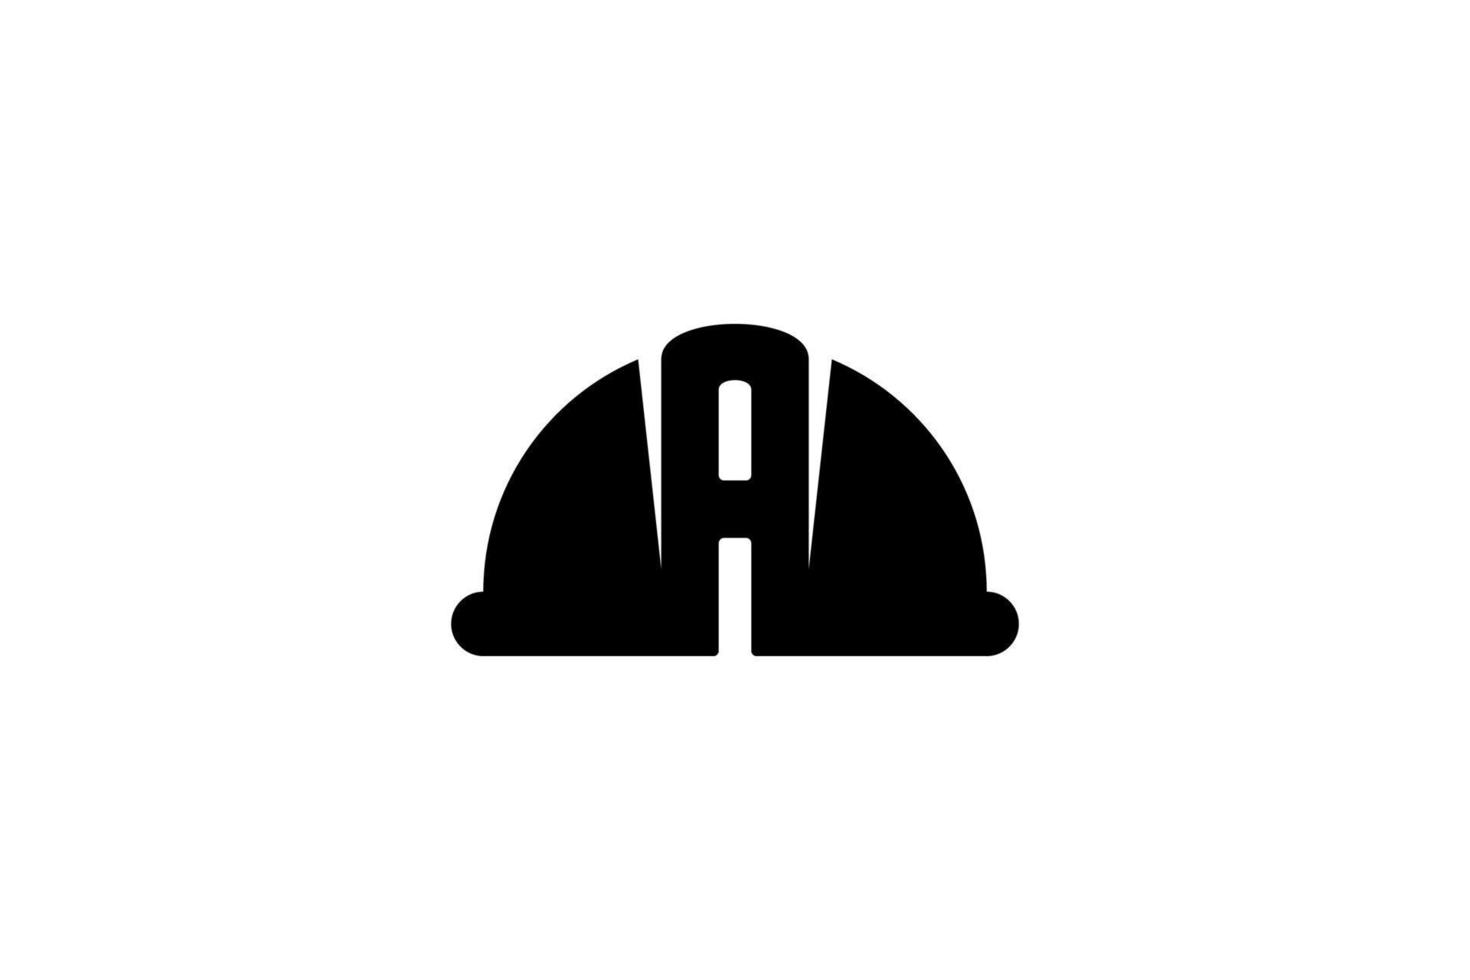 zwart wit helm bouw negatief ruimte weg logo vector